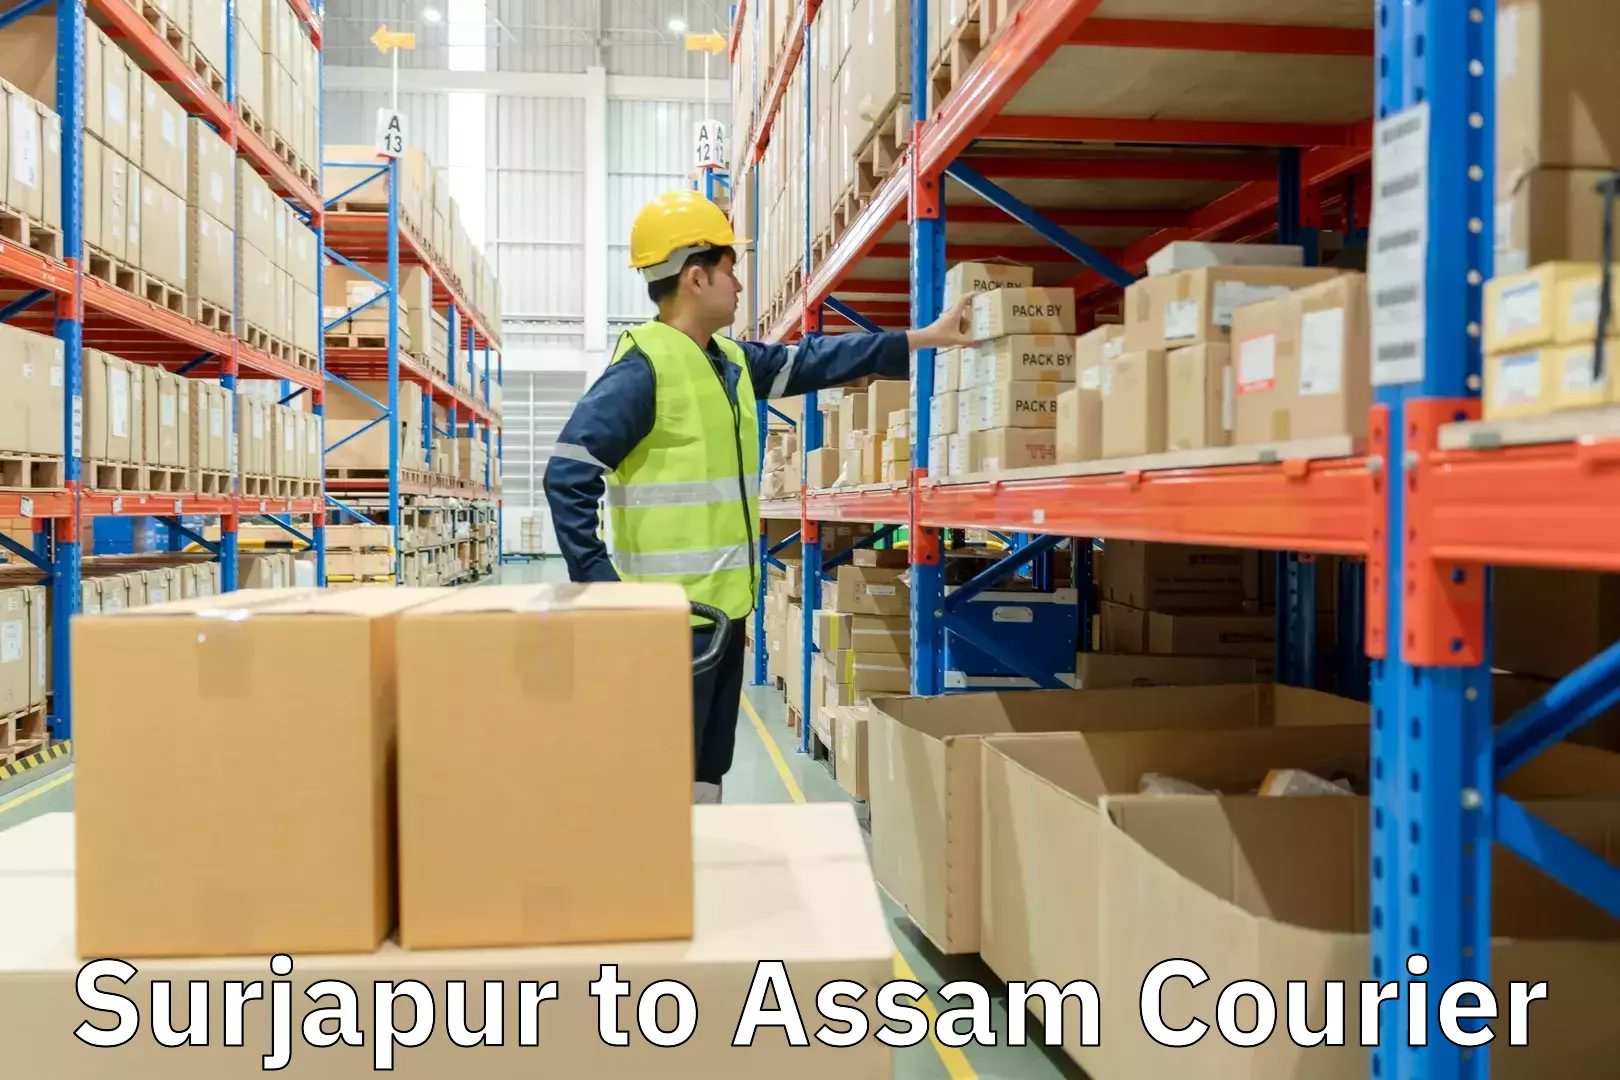 Multi-service courier options Surjapur to Assam